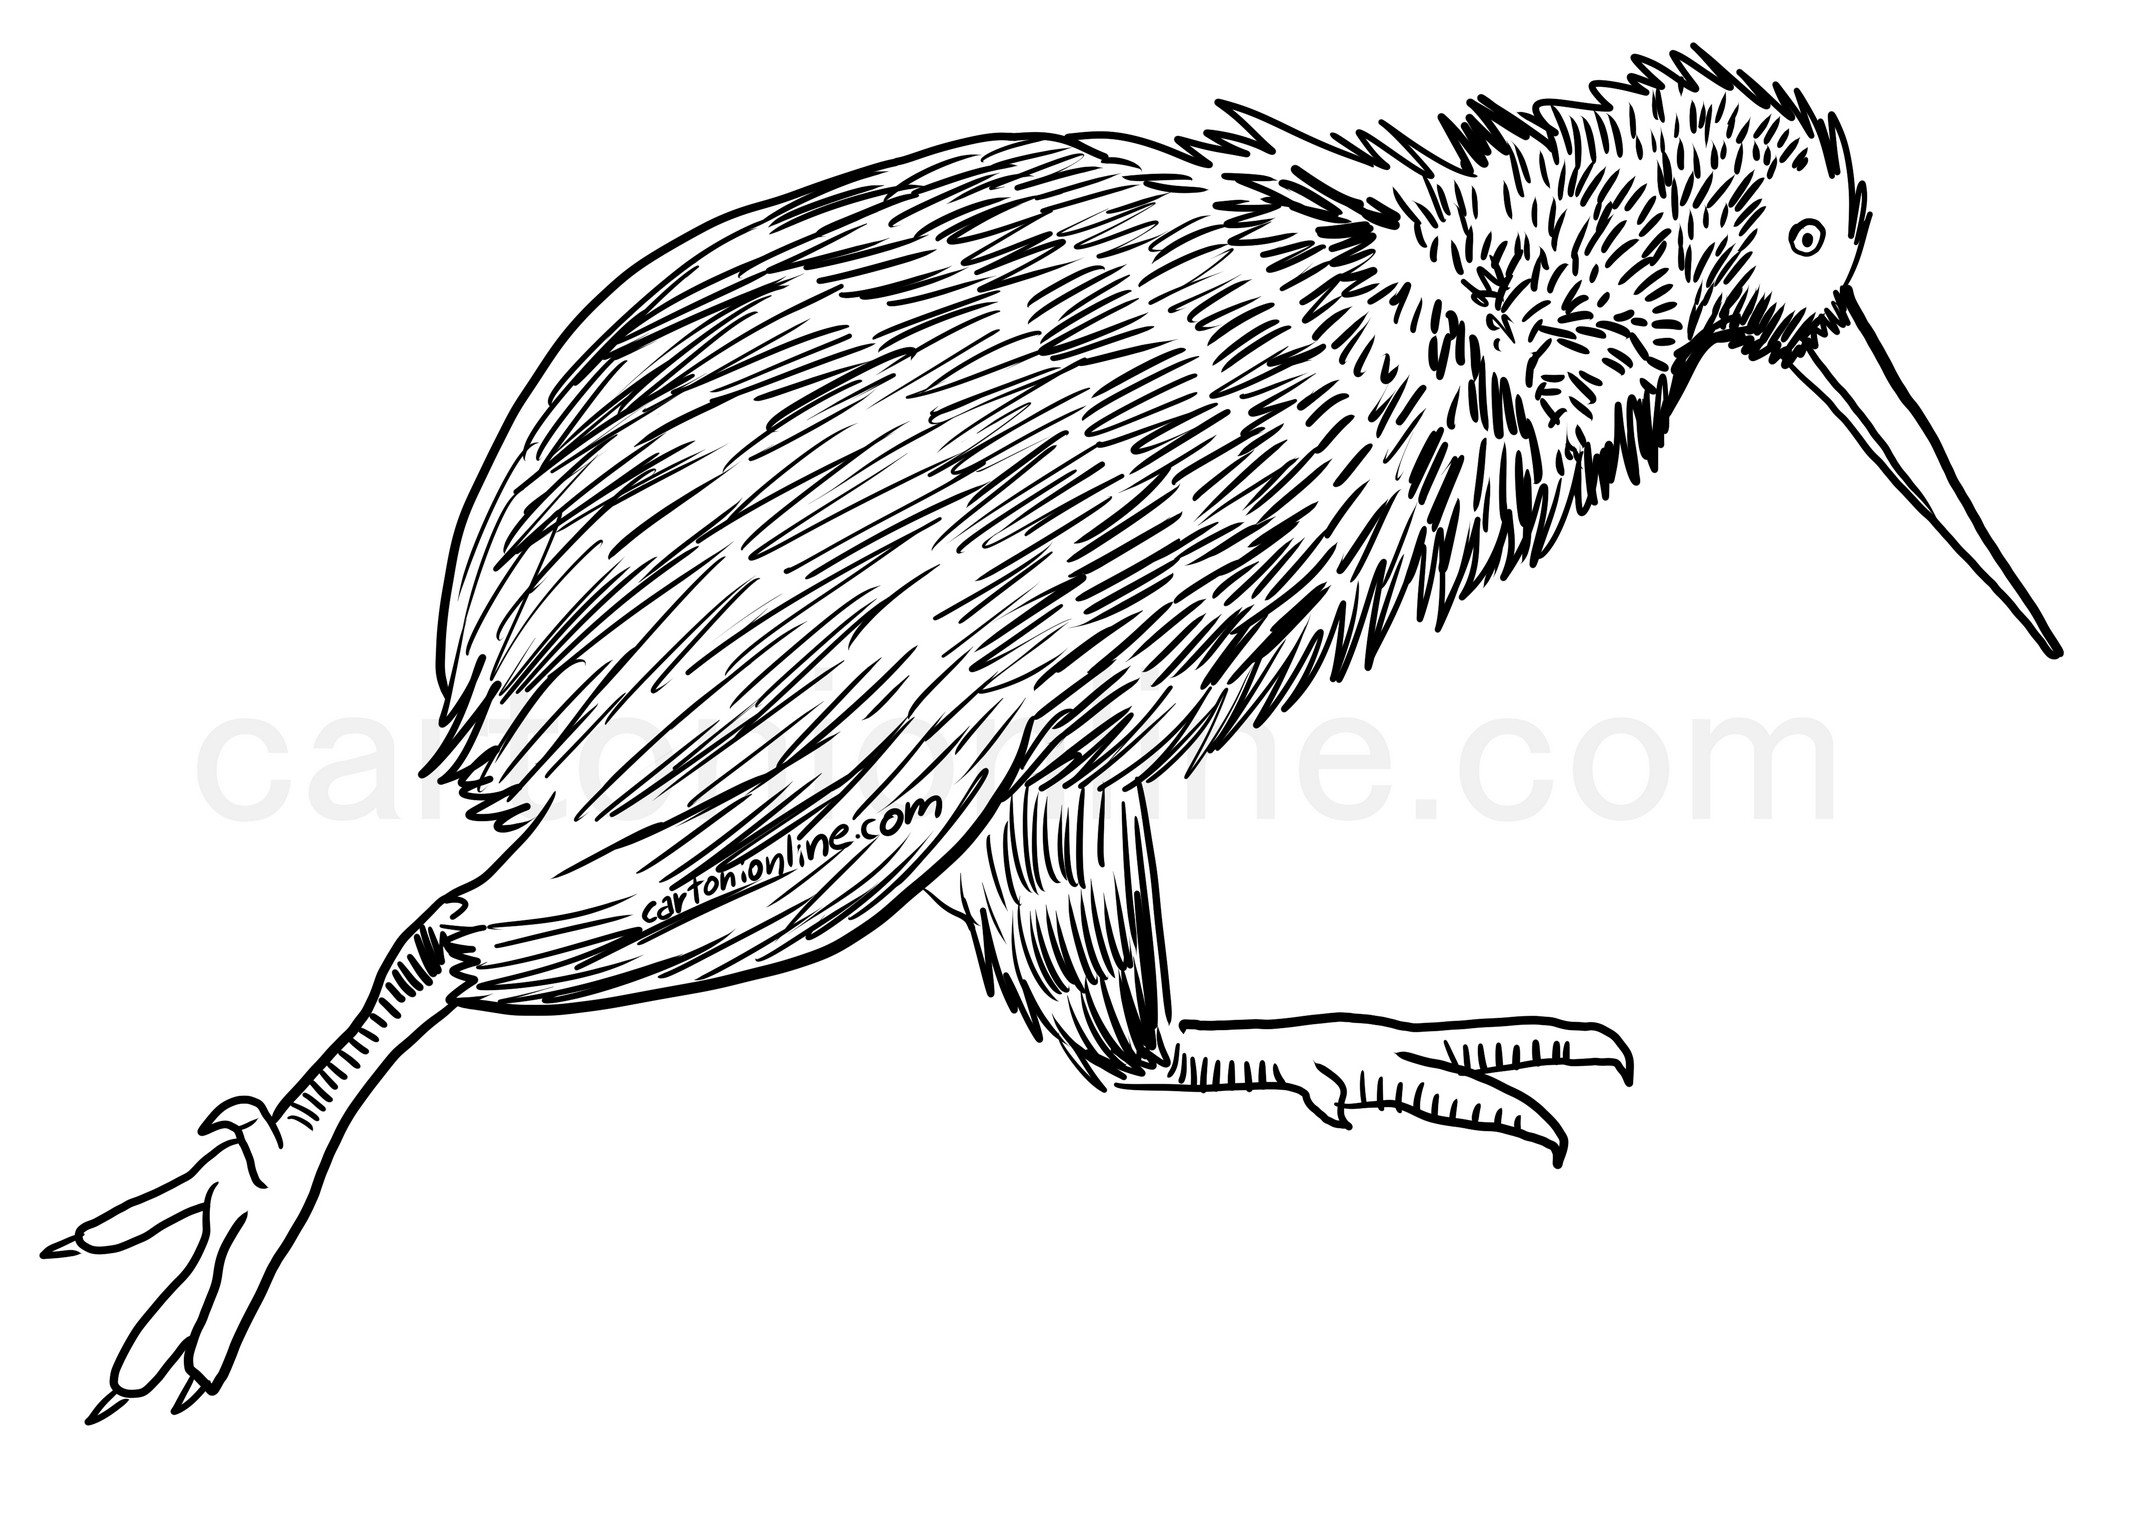 Disegno di uccello kiwi realistico da colorare